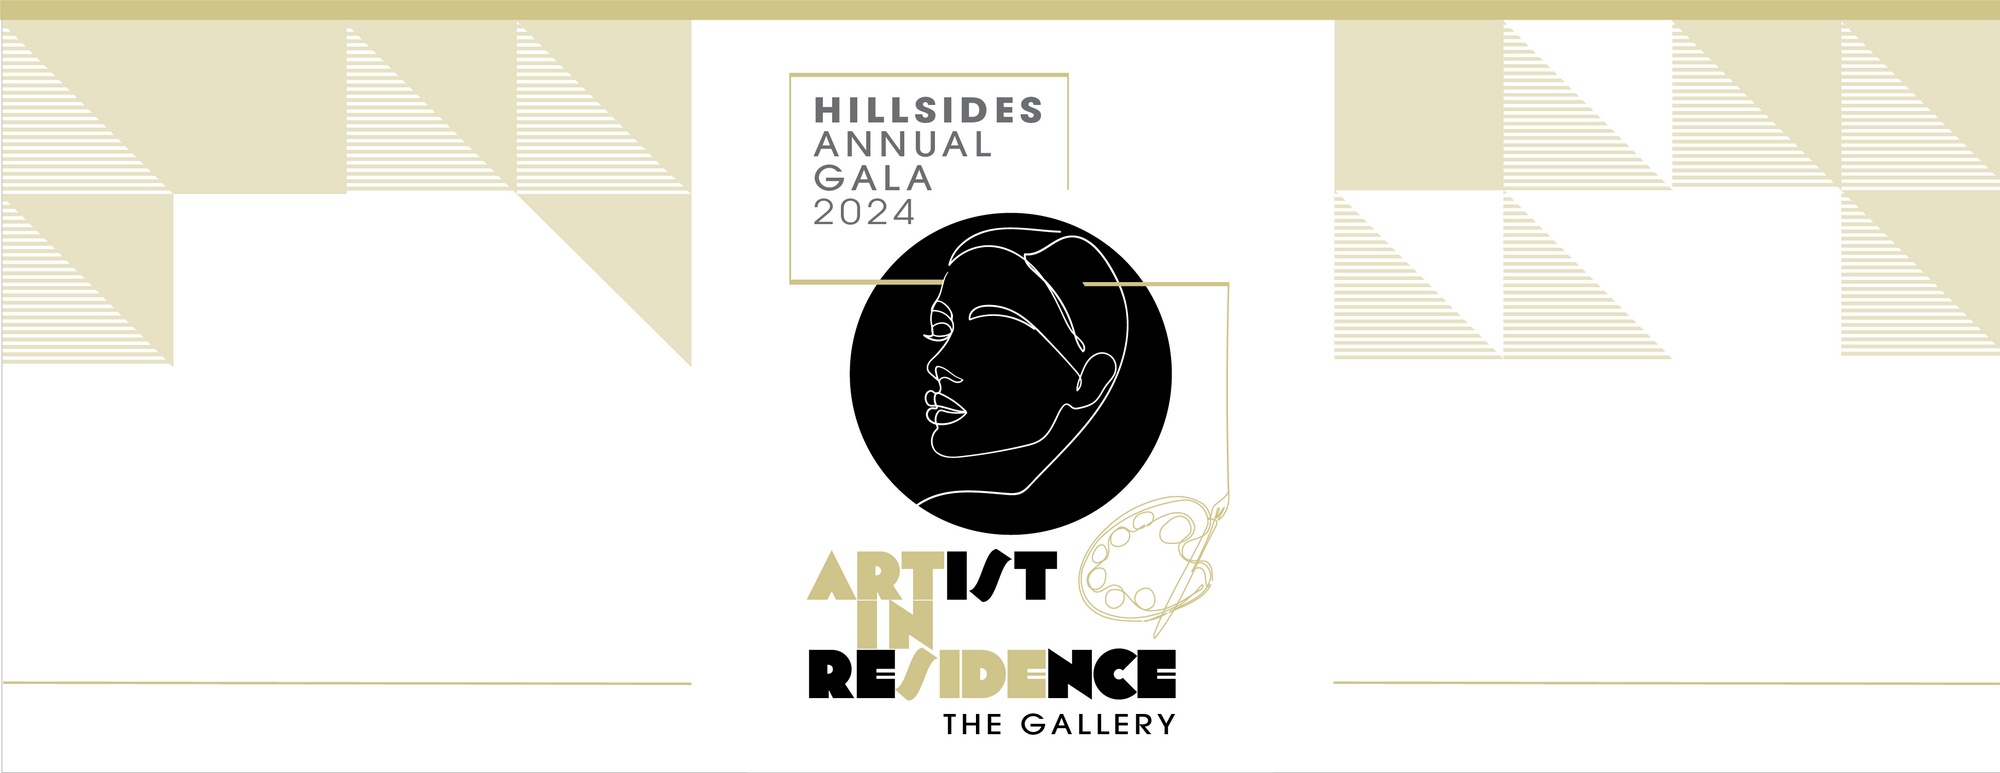 Annual in Gala Artist Hillsides Residence, 2024